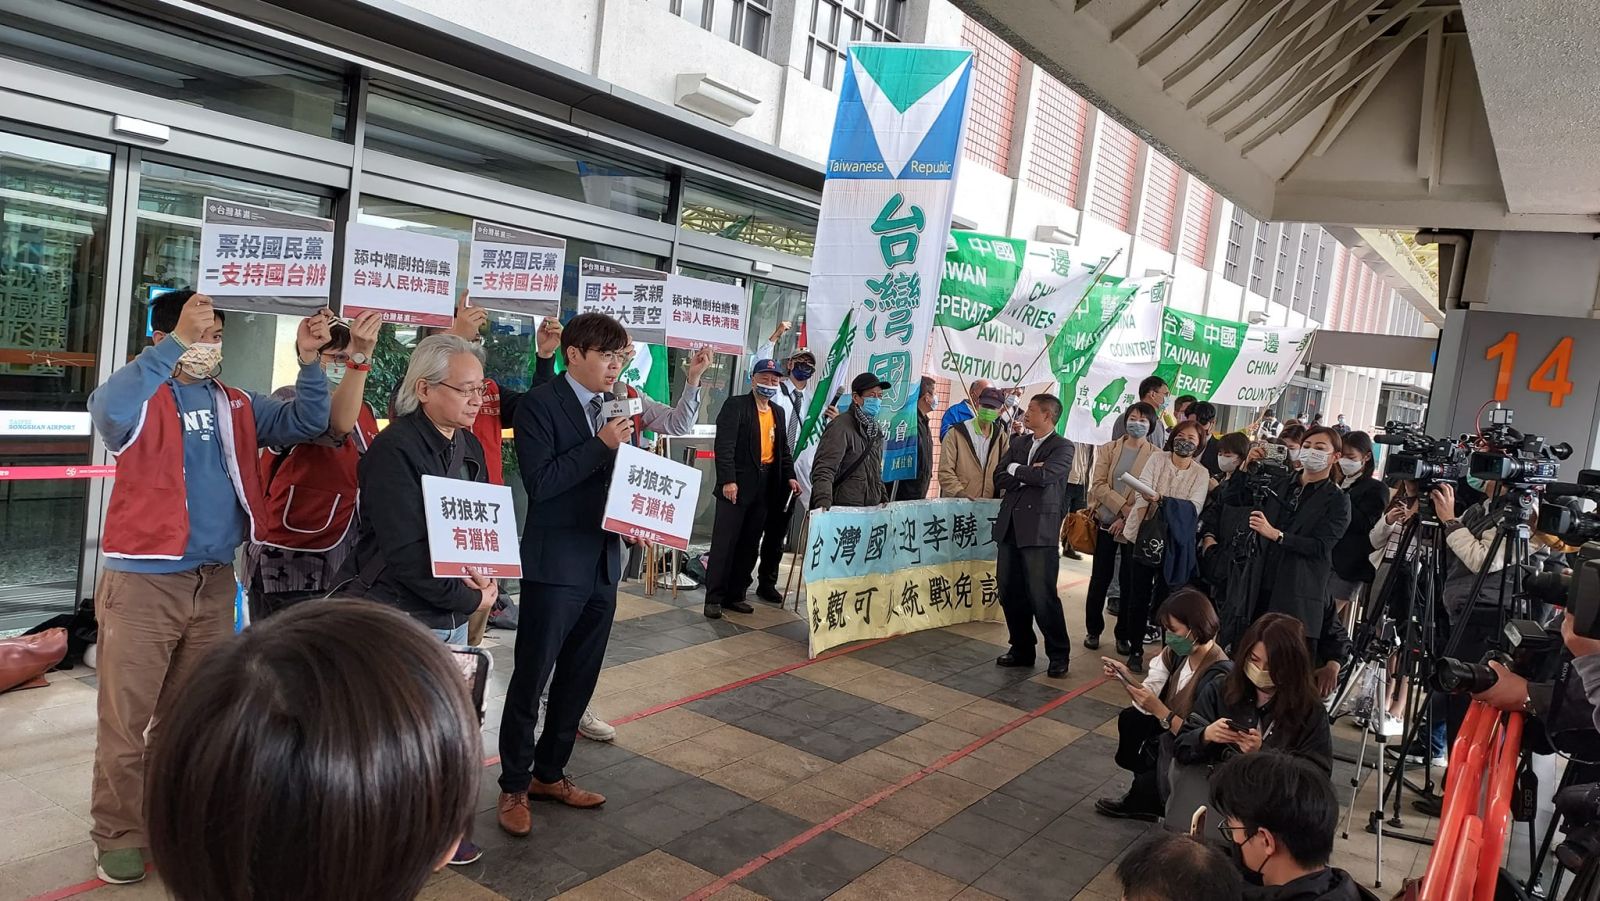 獨派團體基進黨及台灣國場外抗議。翻攝台灣基進臉書直播